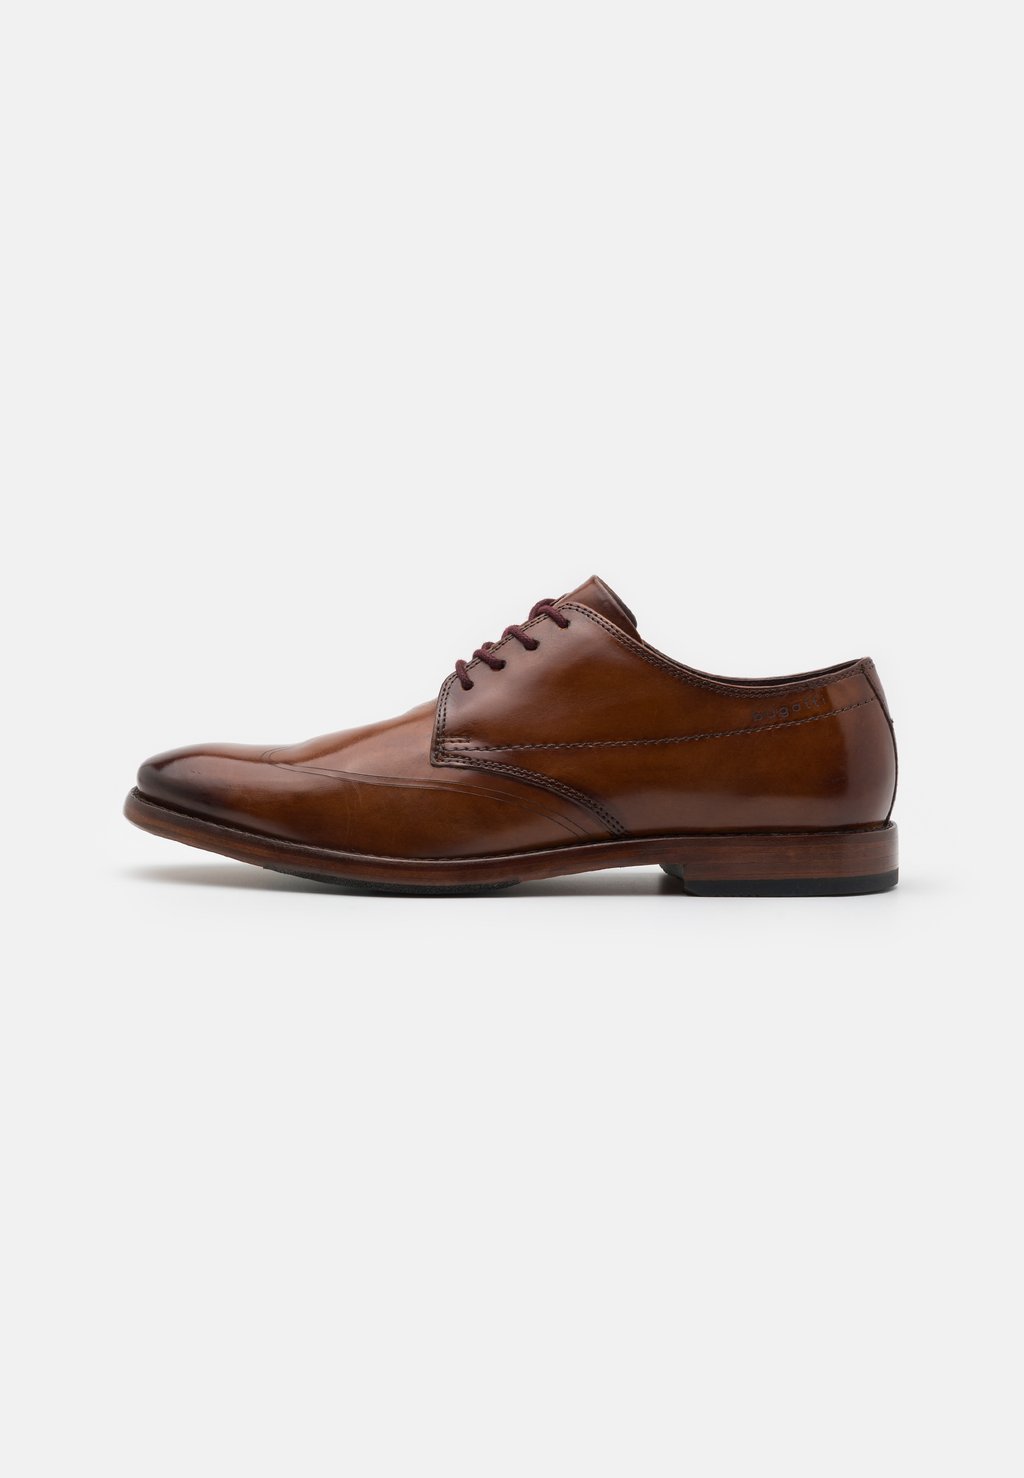 Элегантные туфли на шнуровке Mansaro bugatti, цвет cognac